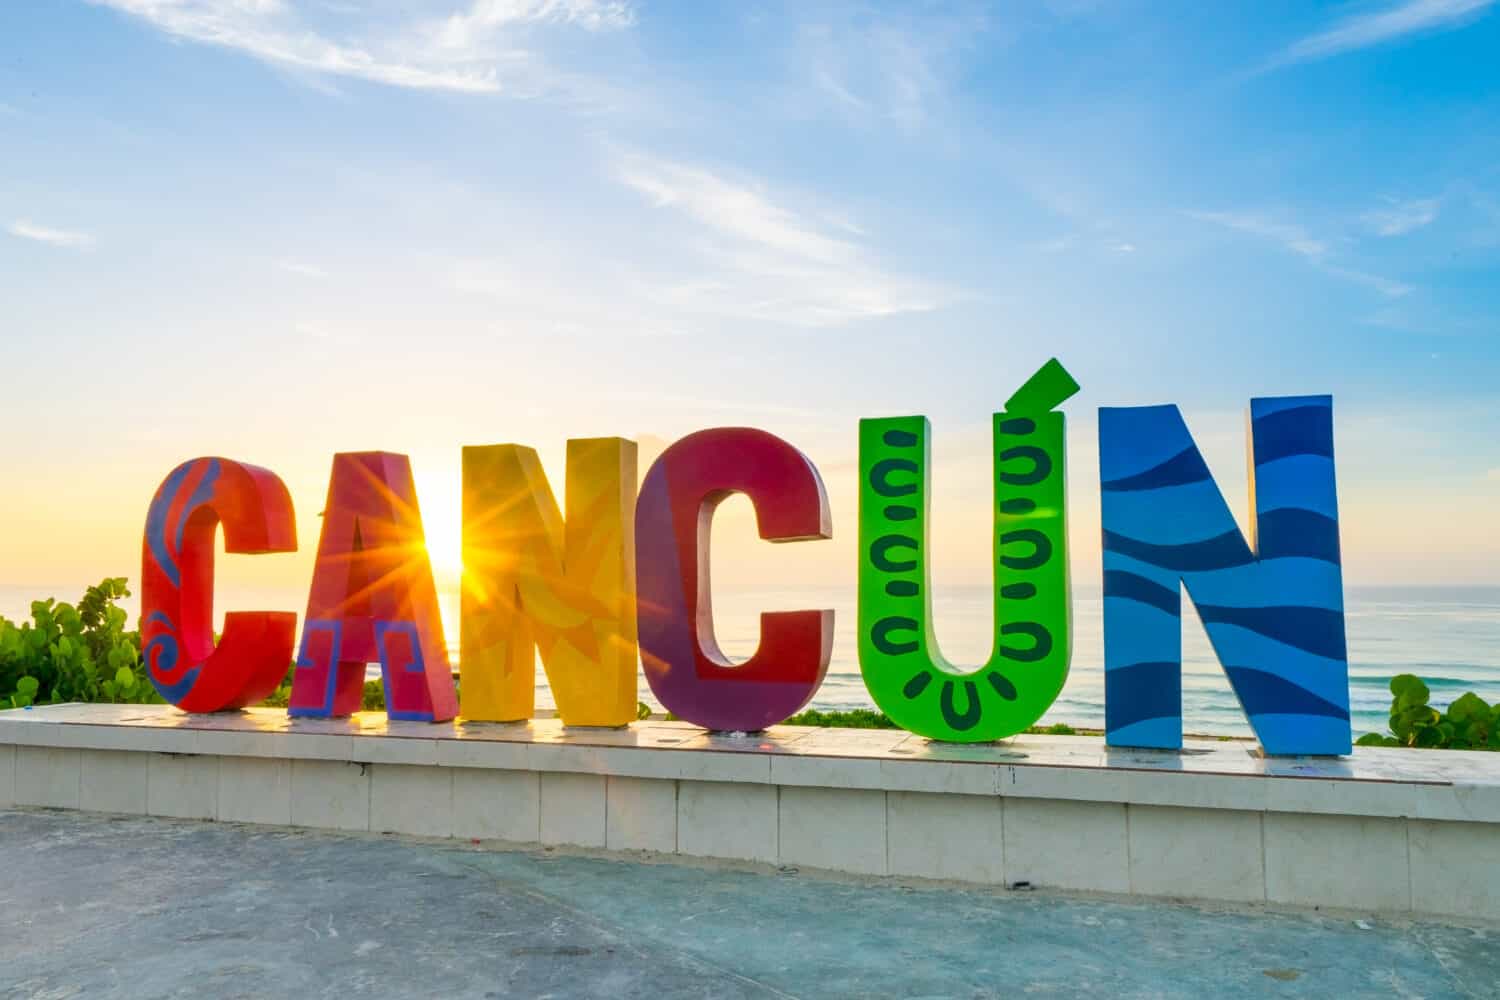 Cancun at sunrise